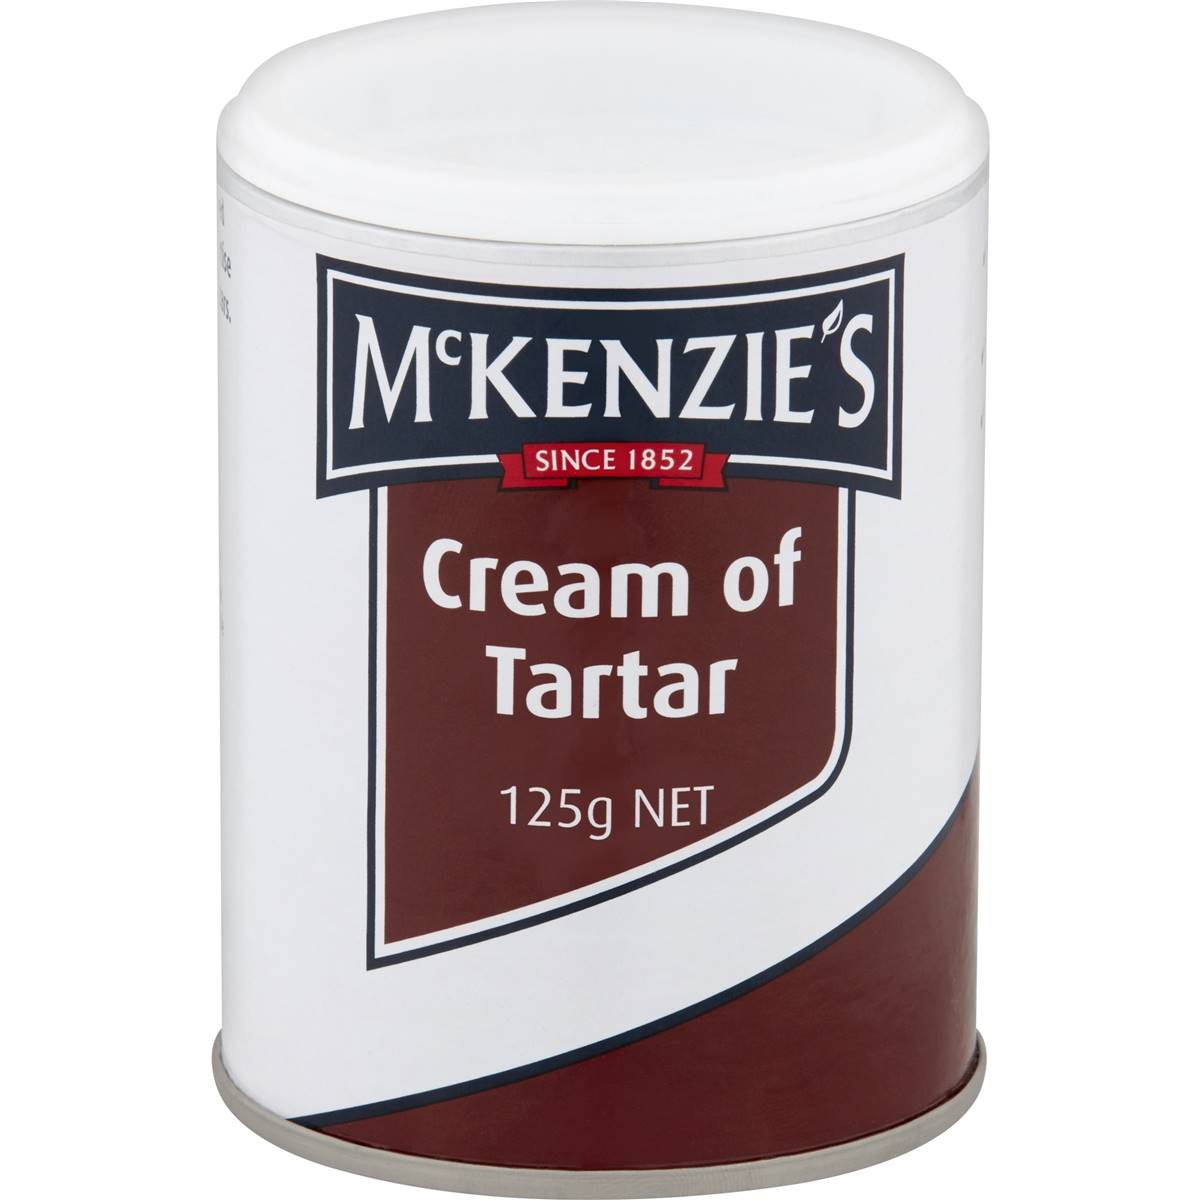 Mckenzie's Cream Of Tartar 125g | Woolworths
